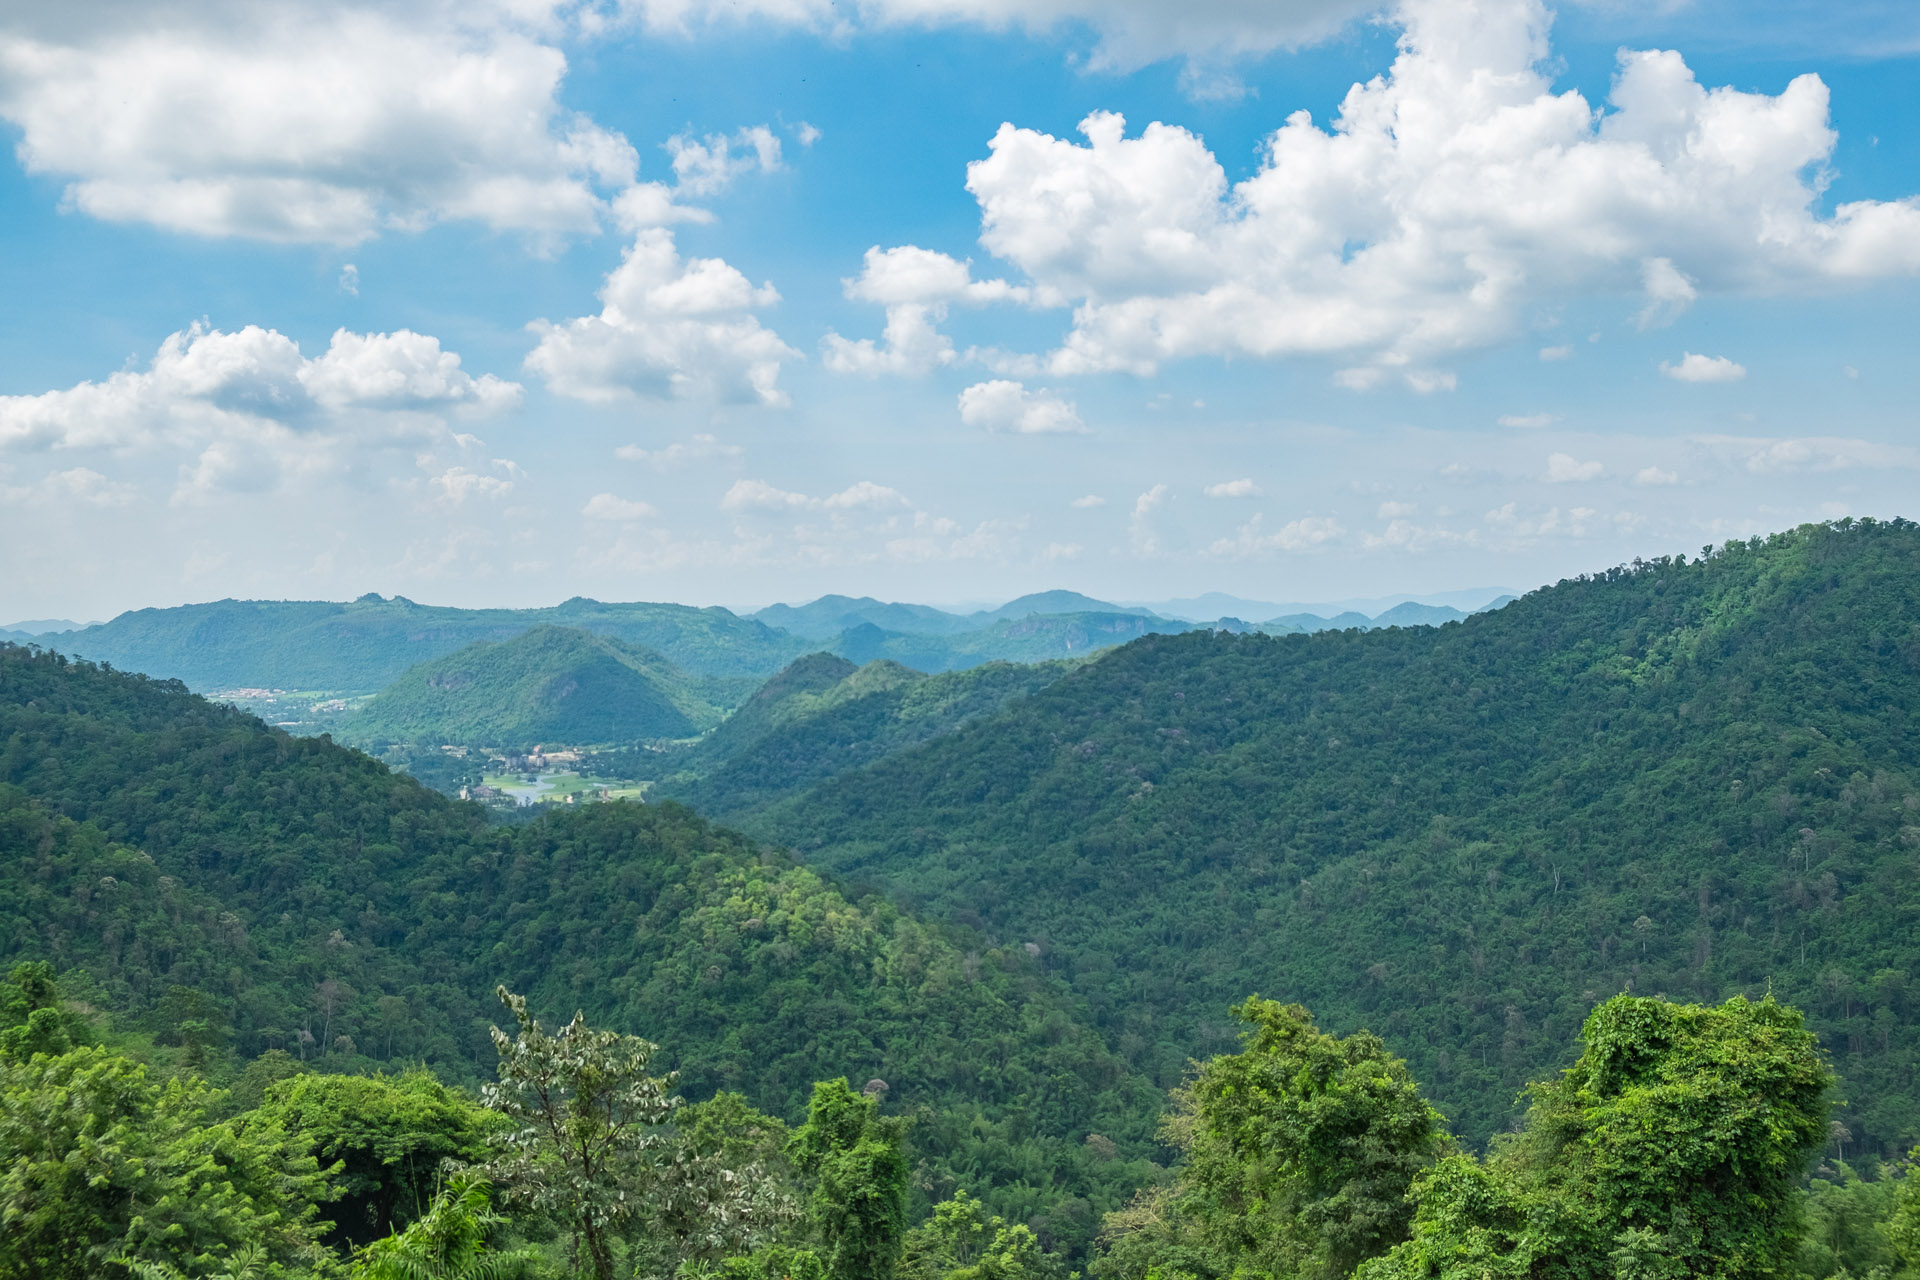 หุบเขาเขียวขจีใน เขาใหญ่ ประเทศไทย